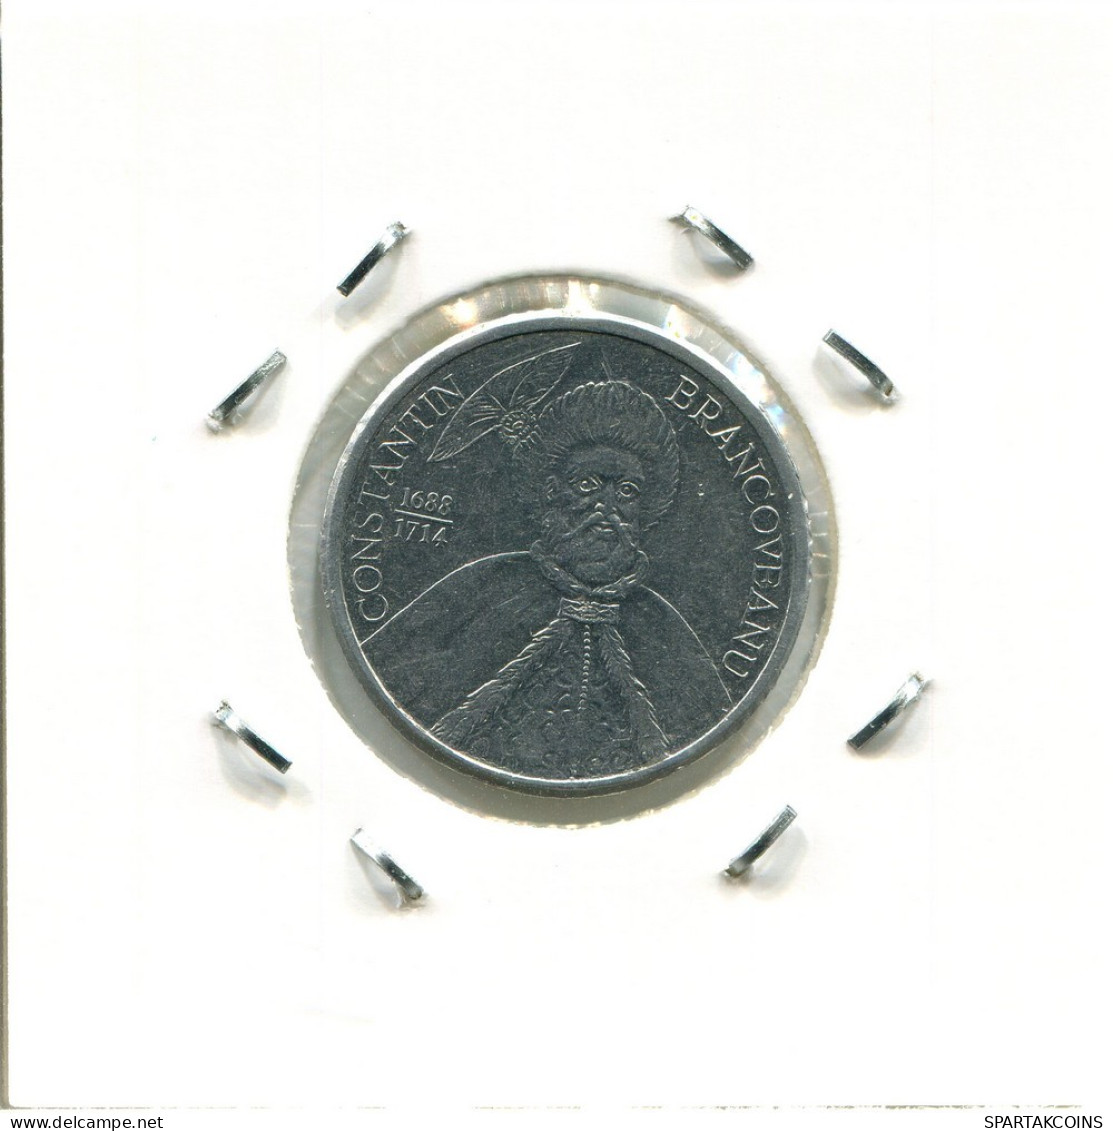 1000 LEI 2003 ROMÁN OMANIA Moneda #AP700.2.E.A - Romania